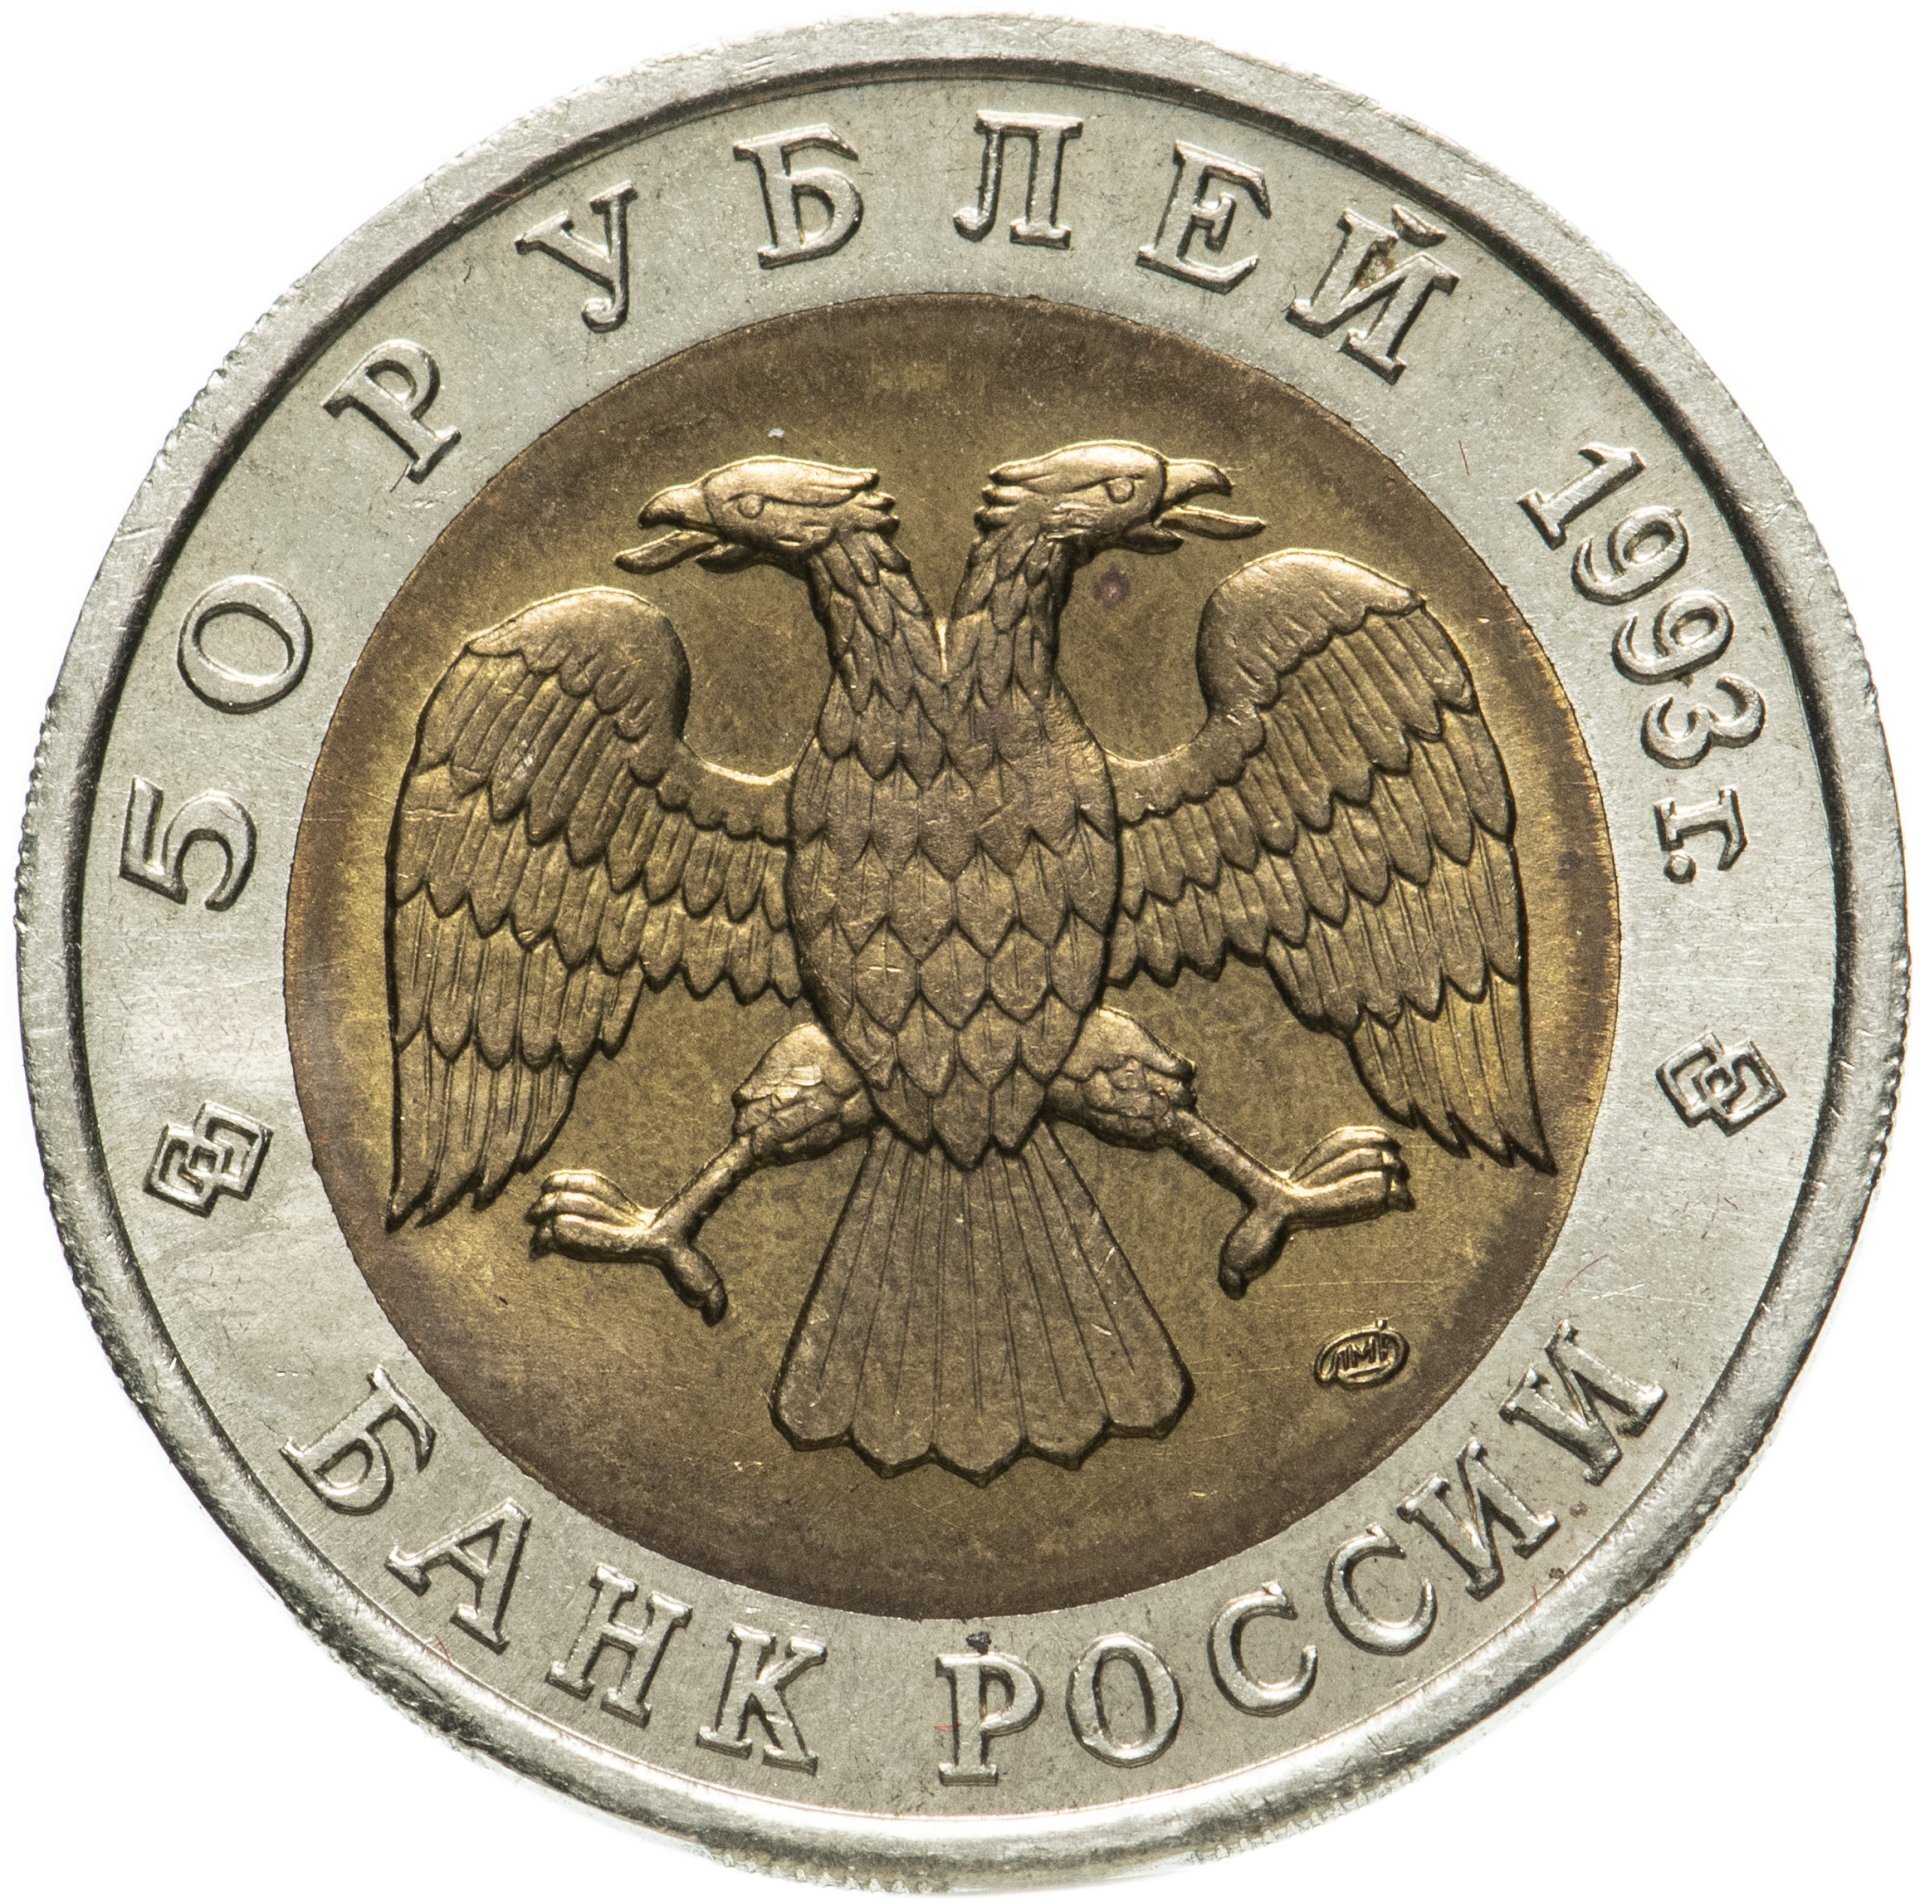 Сколько стоит рубль пятьдесят